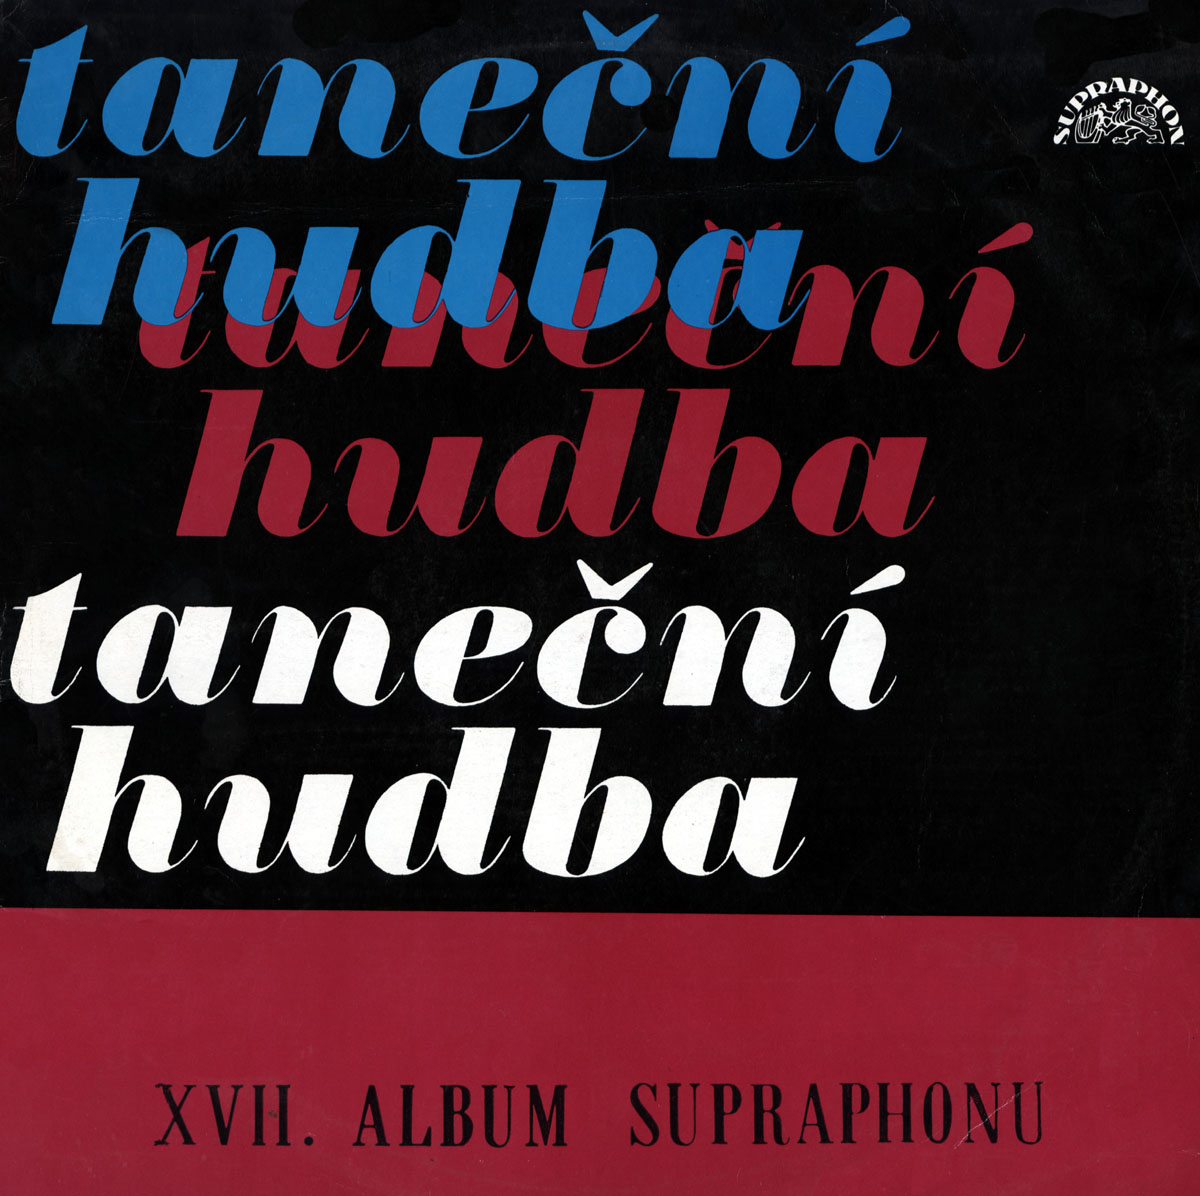 XVII. album Supraphonu [по заказу чешской фирмы SUPRAPHON, 1 13 2270]